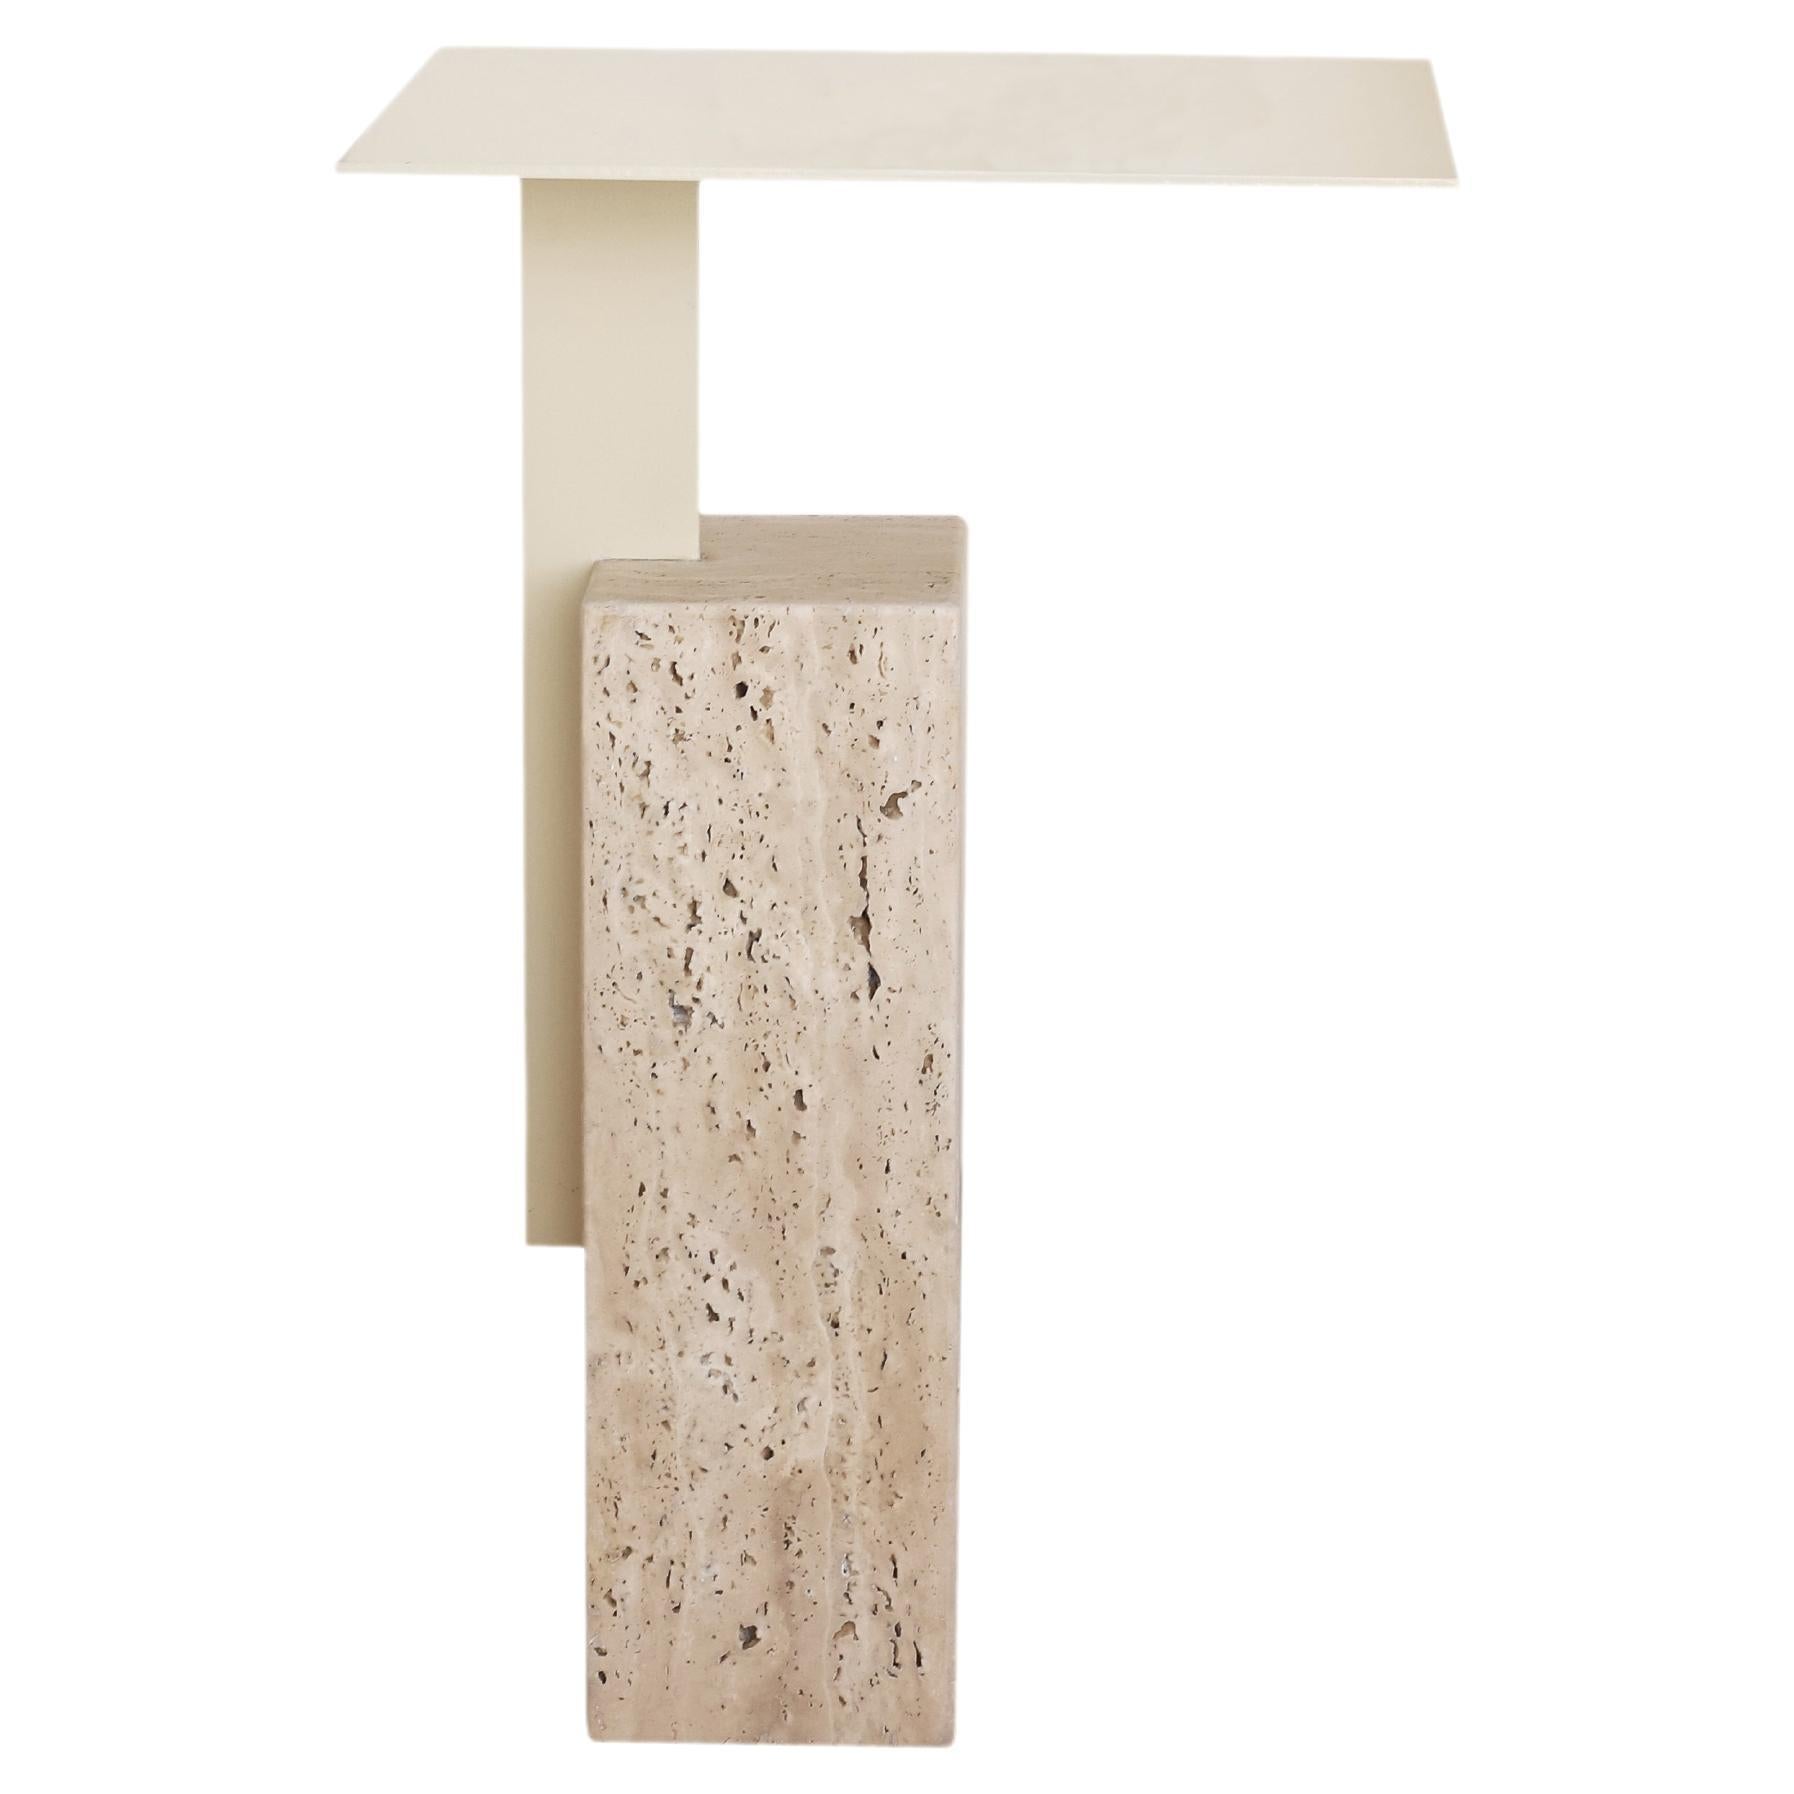 Table d'appoint Mono combinant travertin et métal de style moderne, blanc cassé